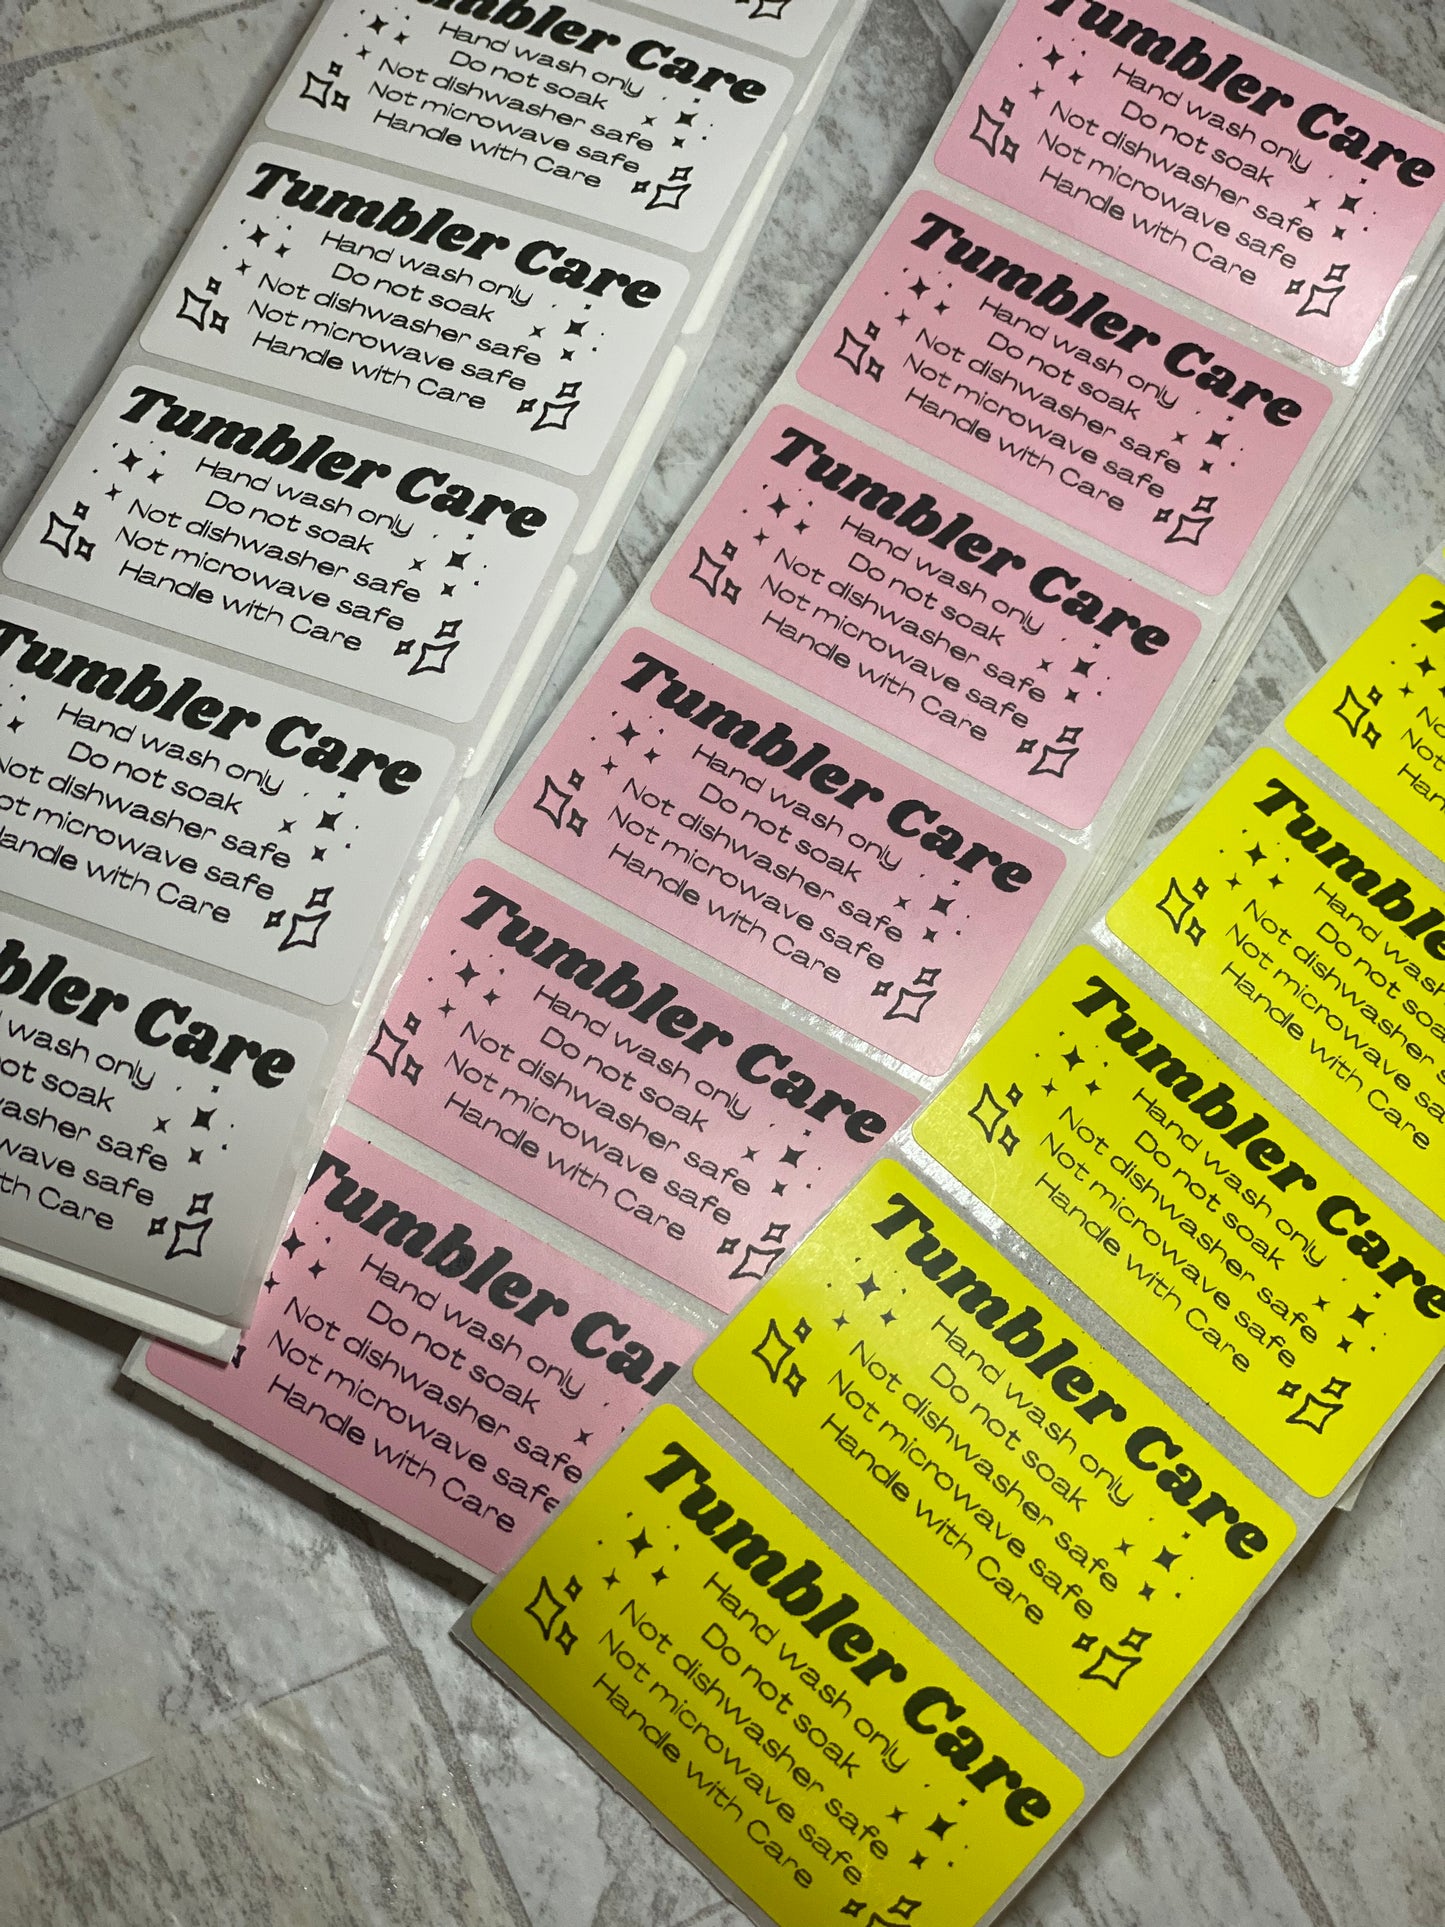 Tumbler Care Thermal Printer labels